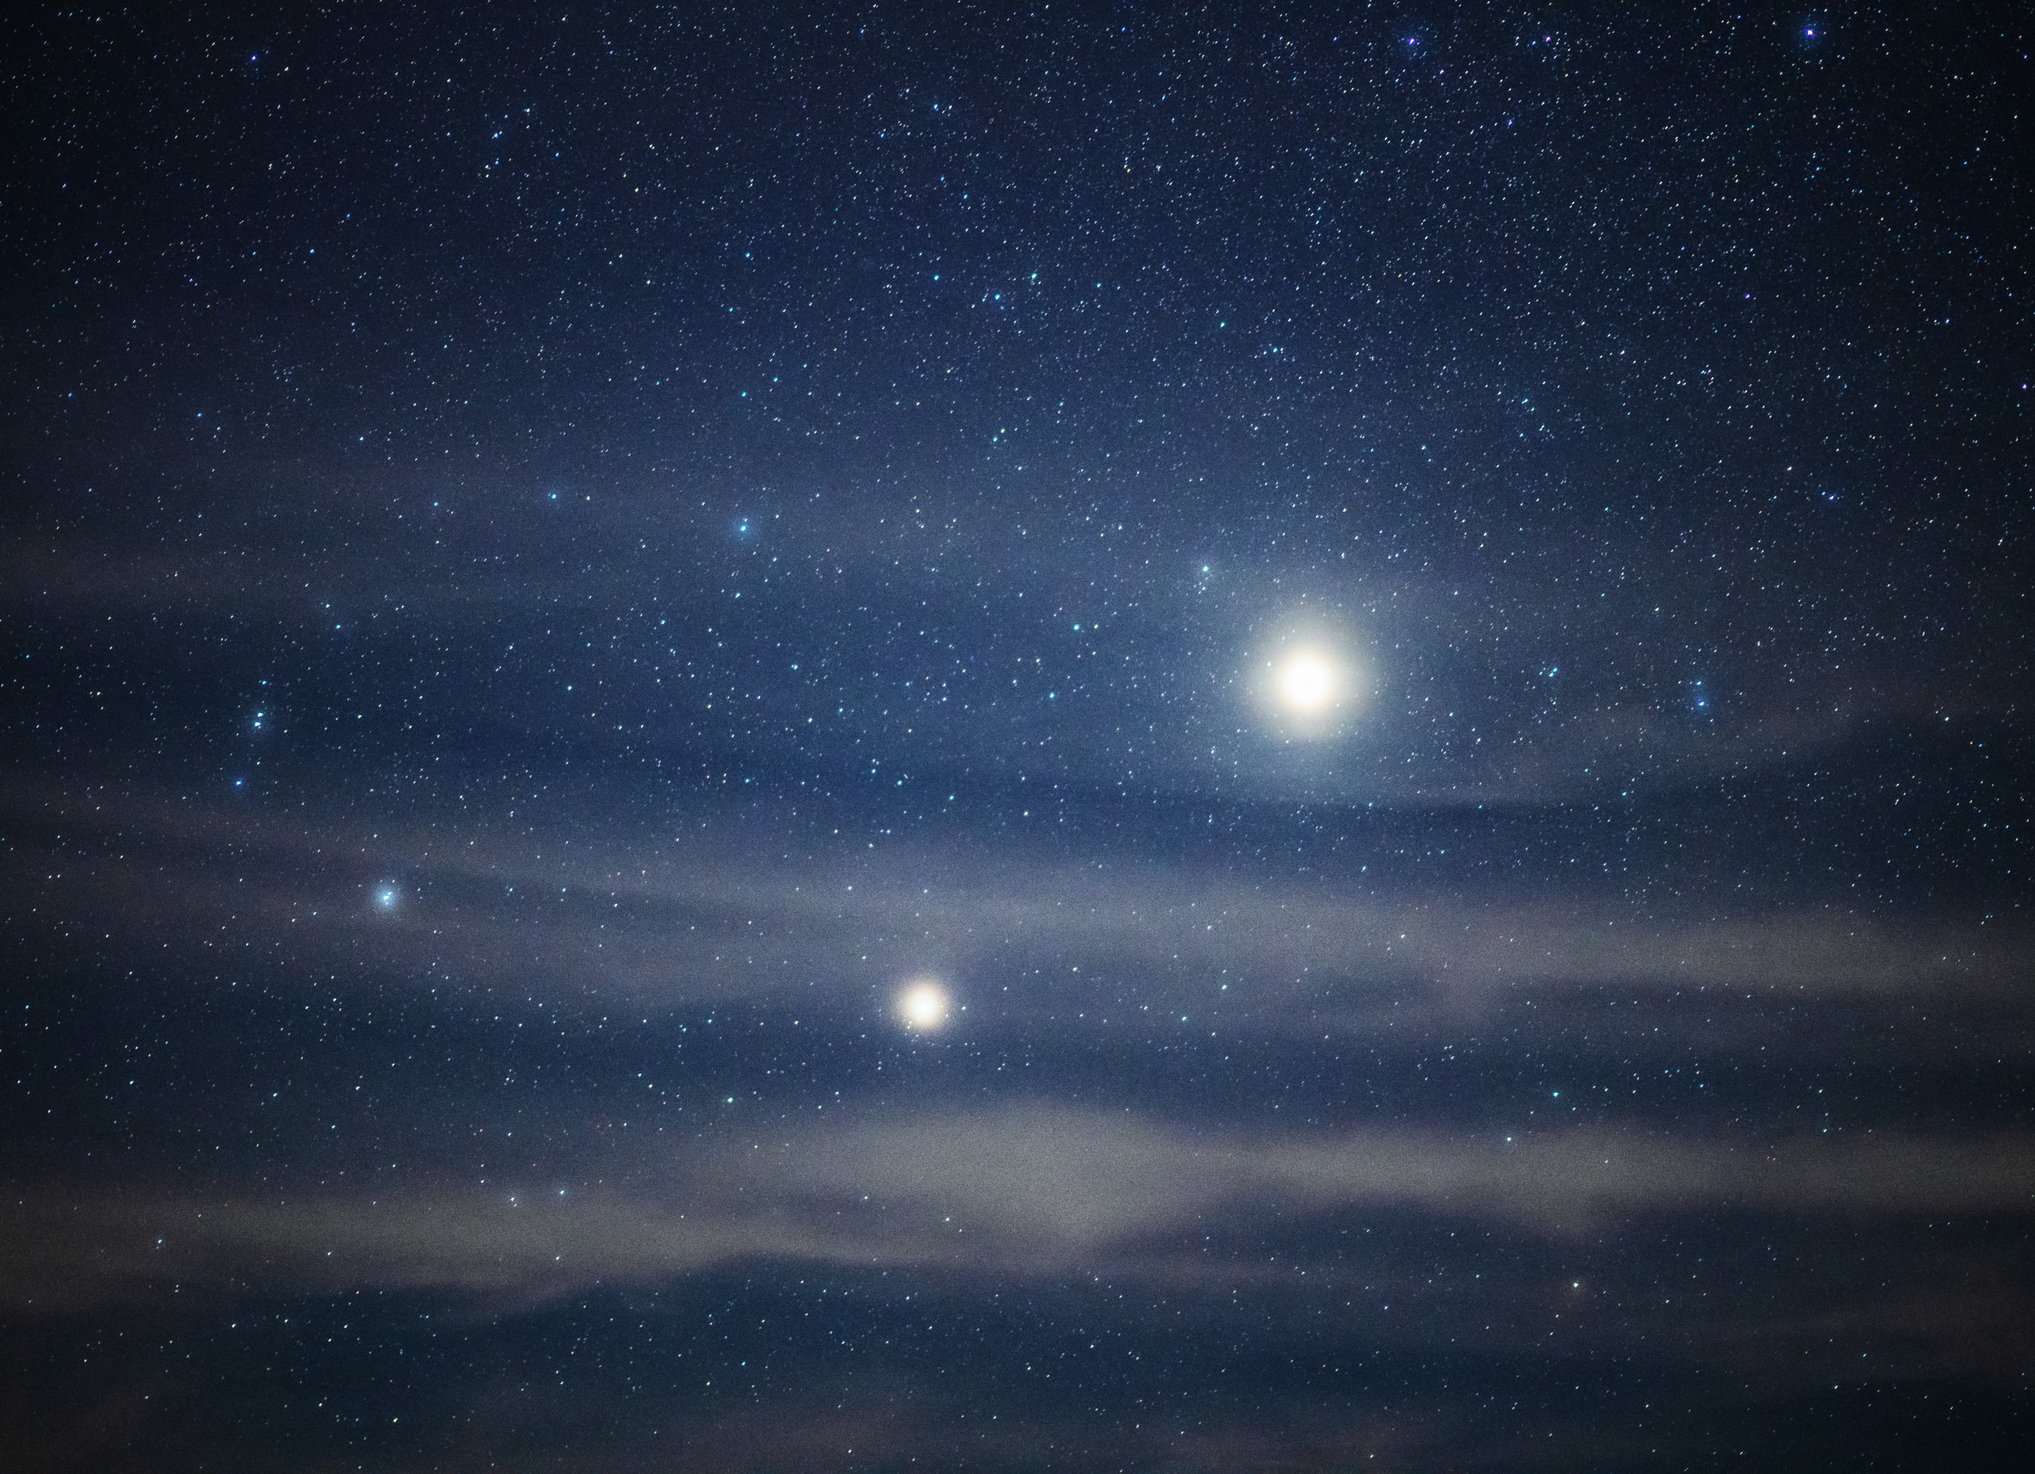 Gece gökyüzünde parlayan parlak bir Jüpiter'in fotoğrafı.